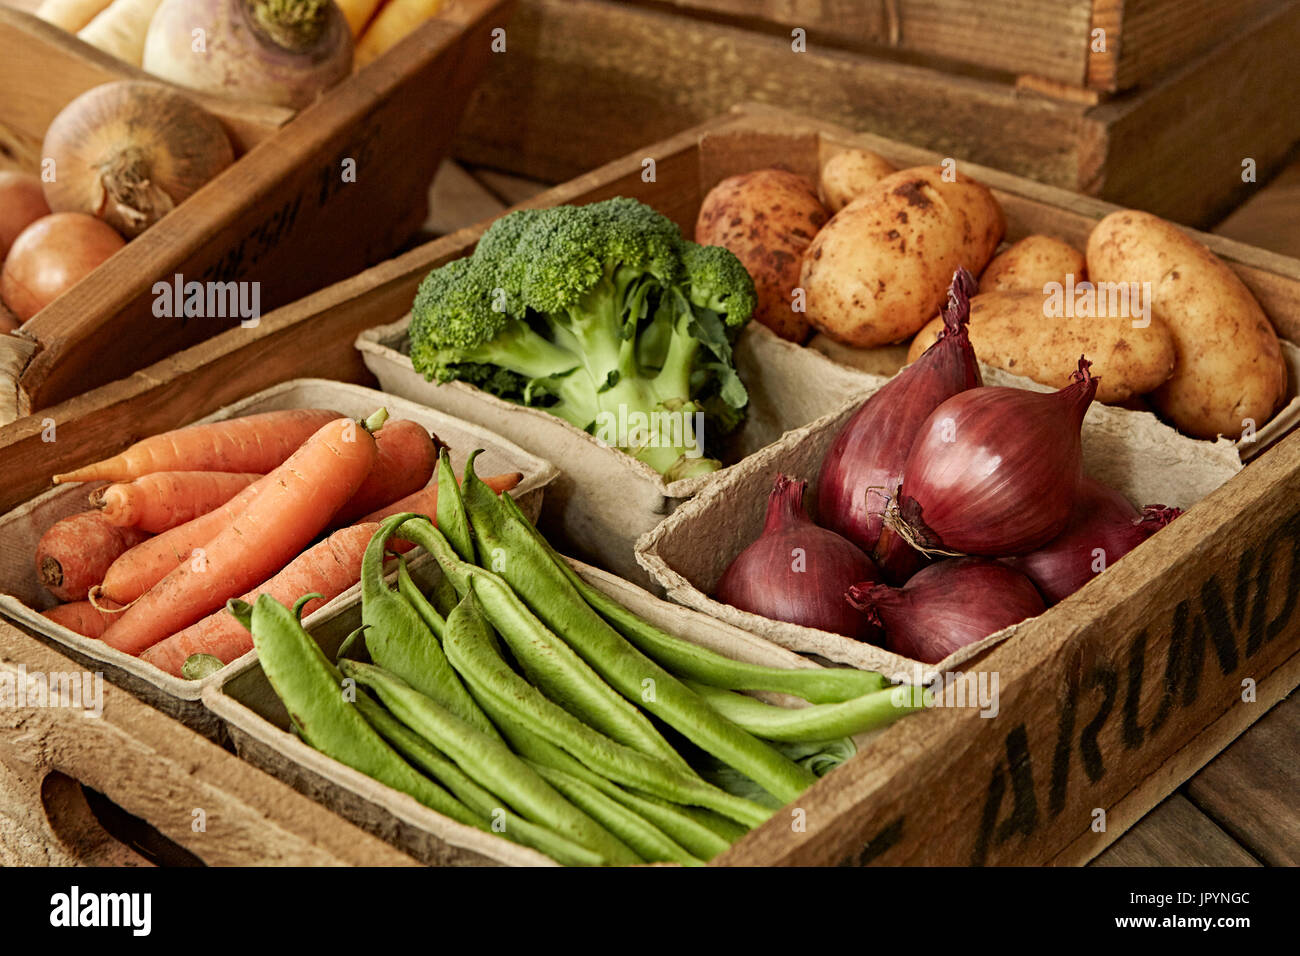 La vie, toujours frais, légumes bio saine récolte variété En caisse bois Banque D'Images